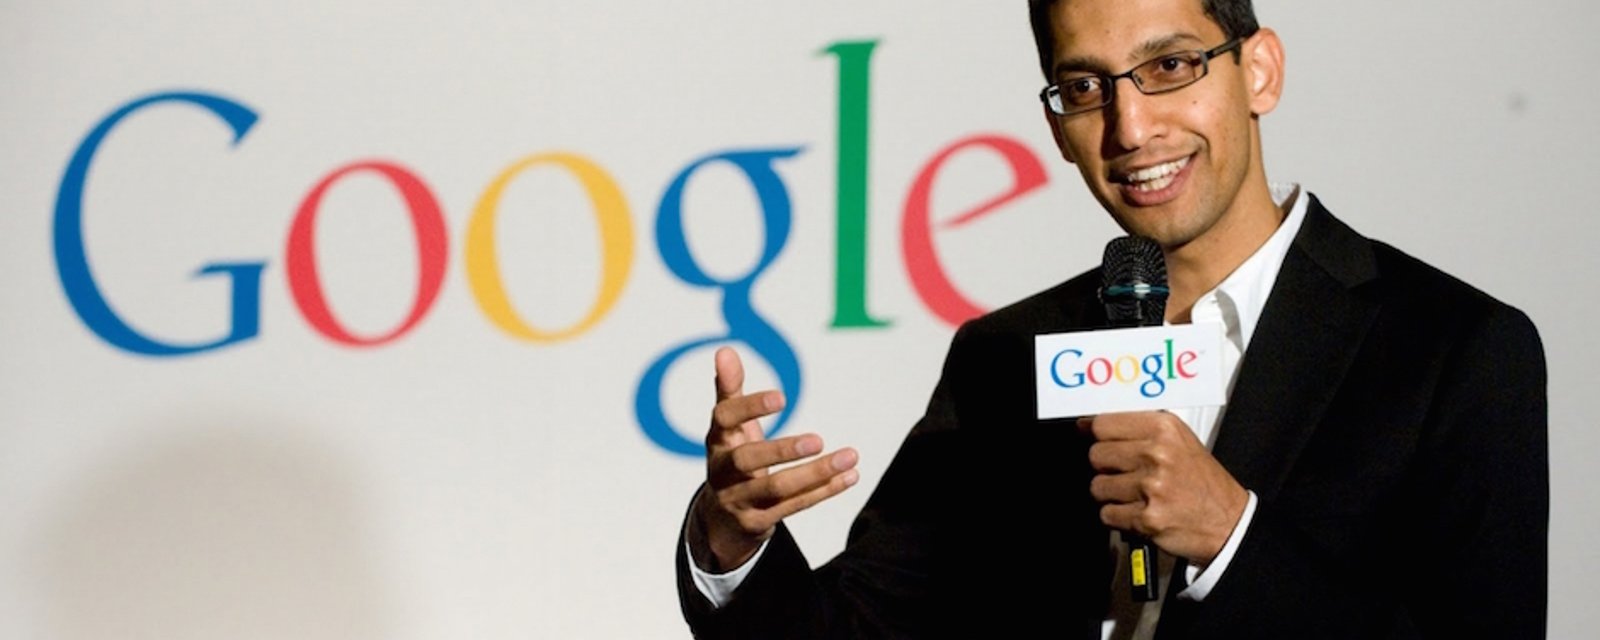 Le CEO de Google affirme à ses employés que l'argent n'est pas synonyme de plaisir